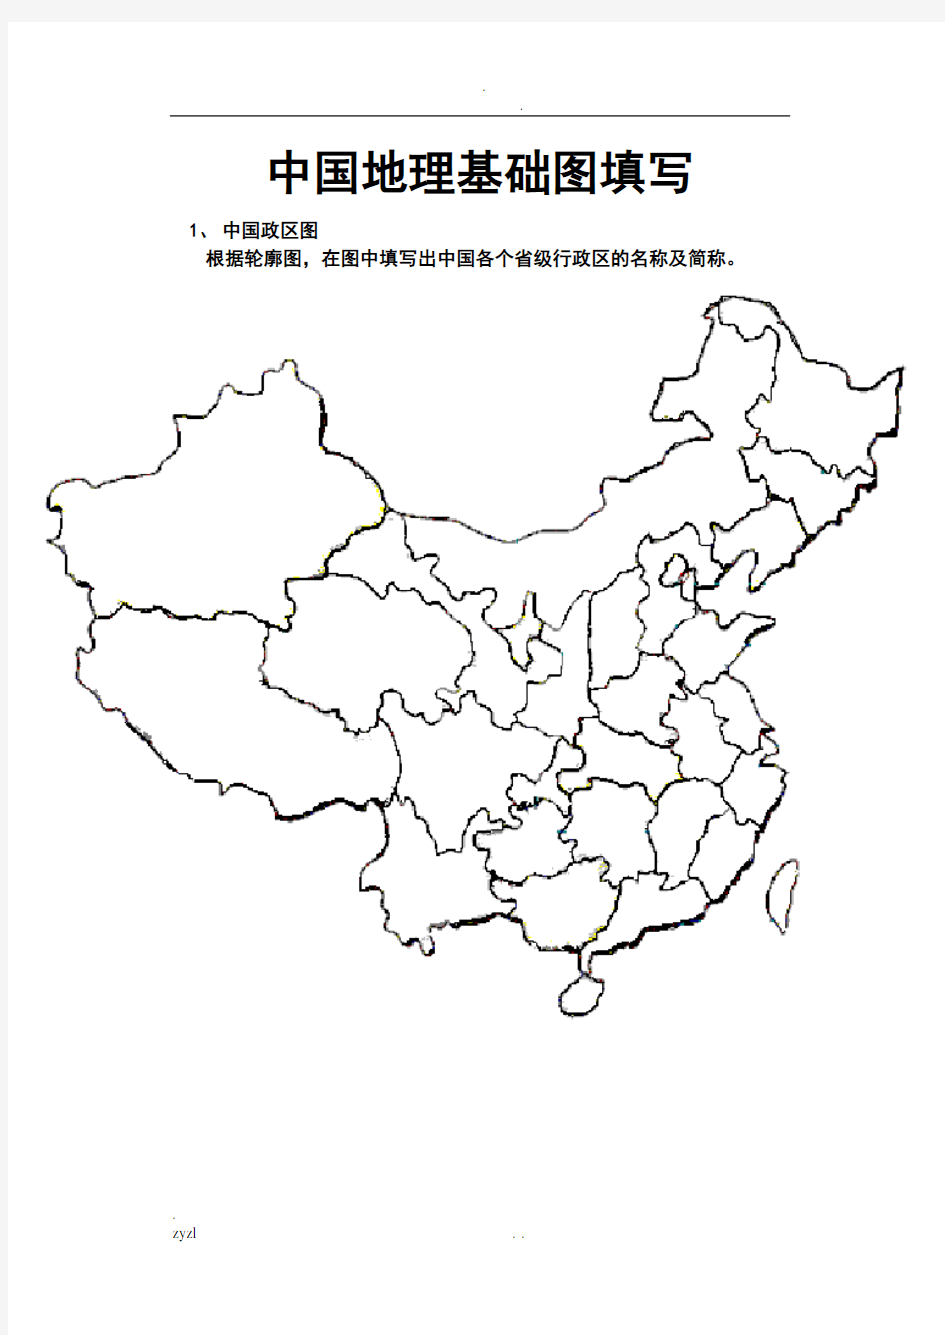 中国地理空白图(政区、分省轮廓、地形、铁路空白图